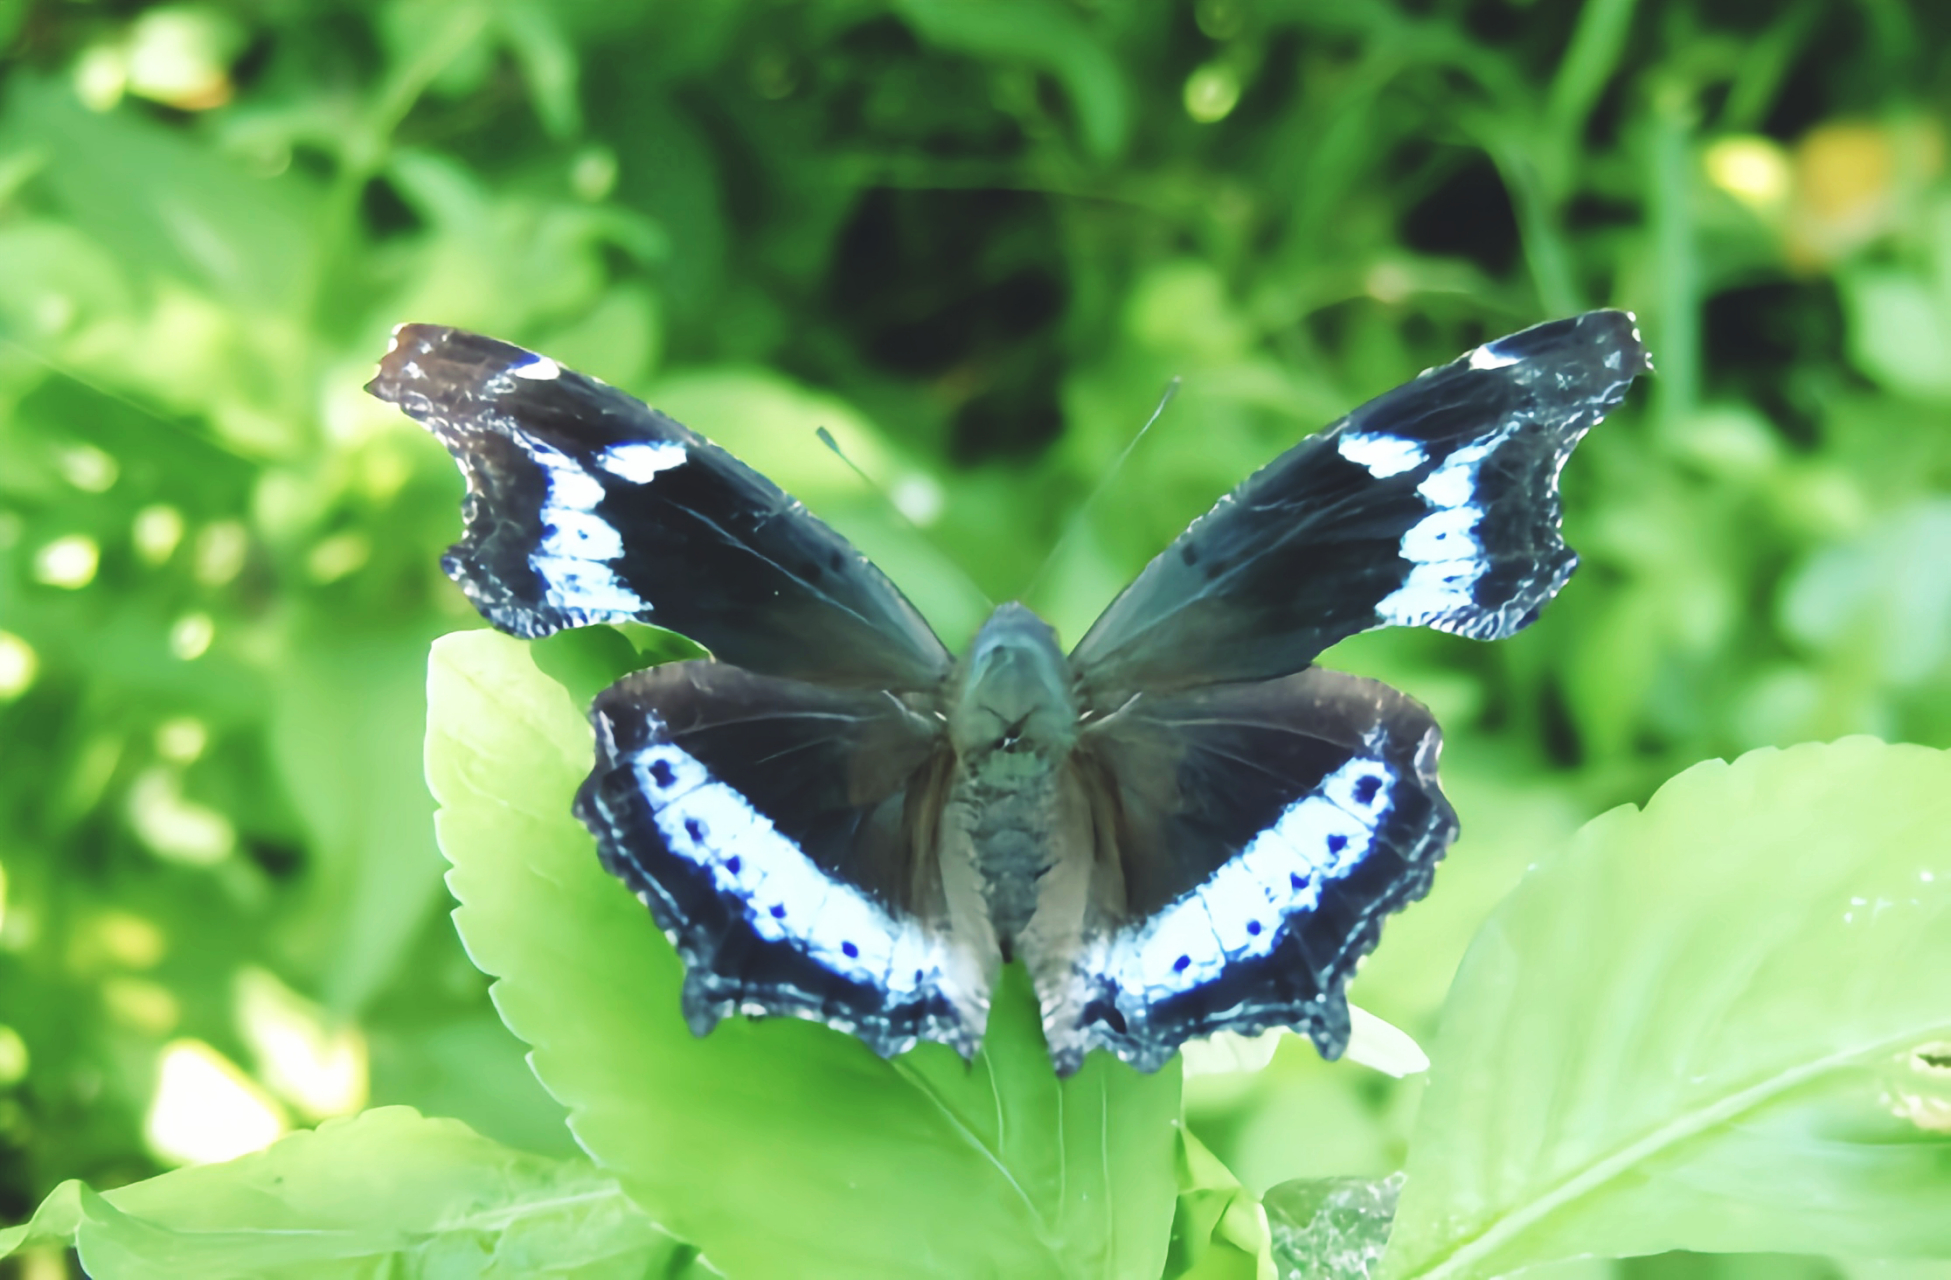 每天认识一种昆虫——琉璃蛱蝶 琉璃蛱蝶是一种中型蛱蝶,数量稀少